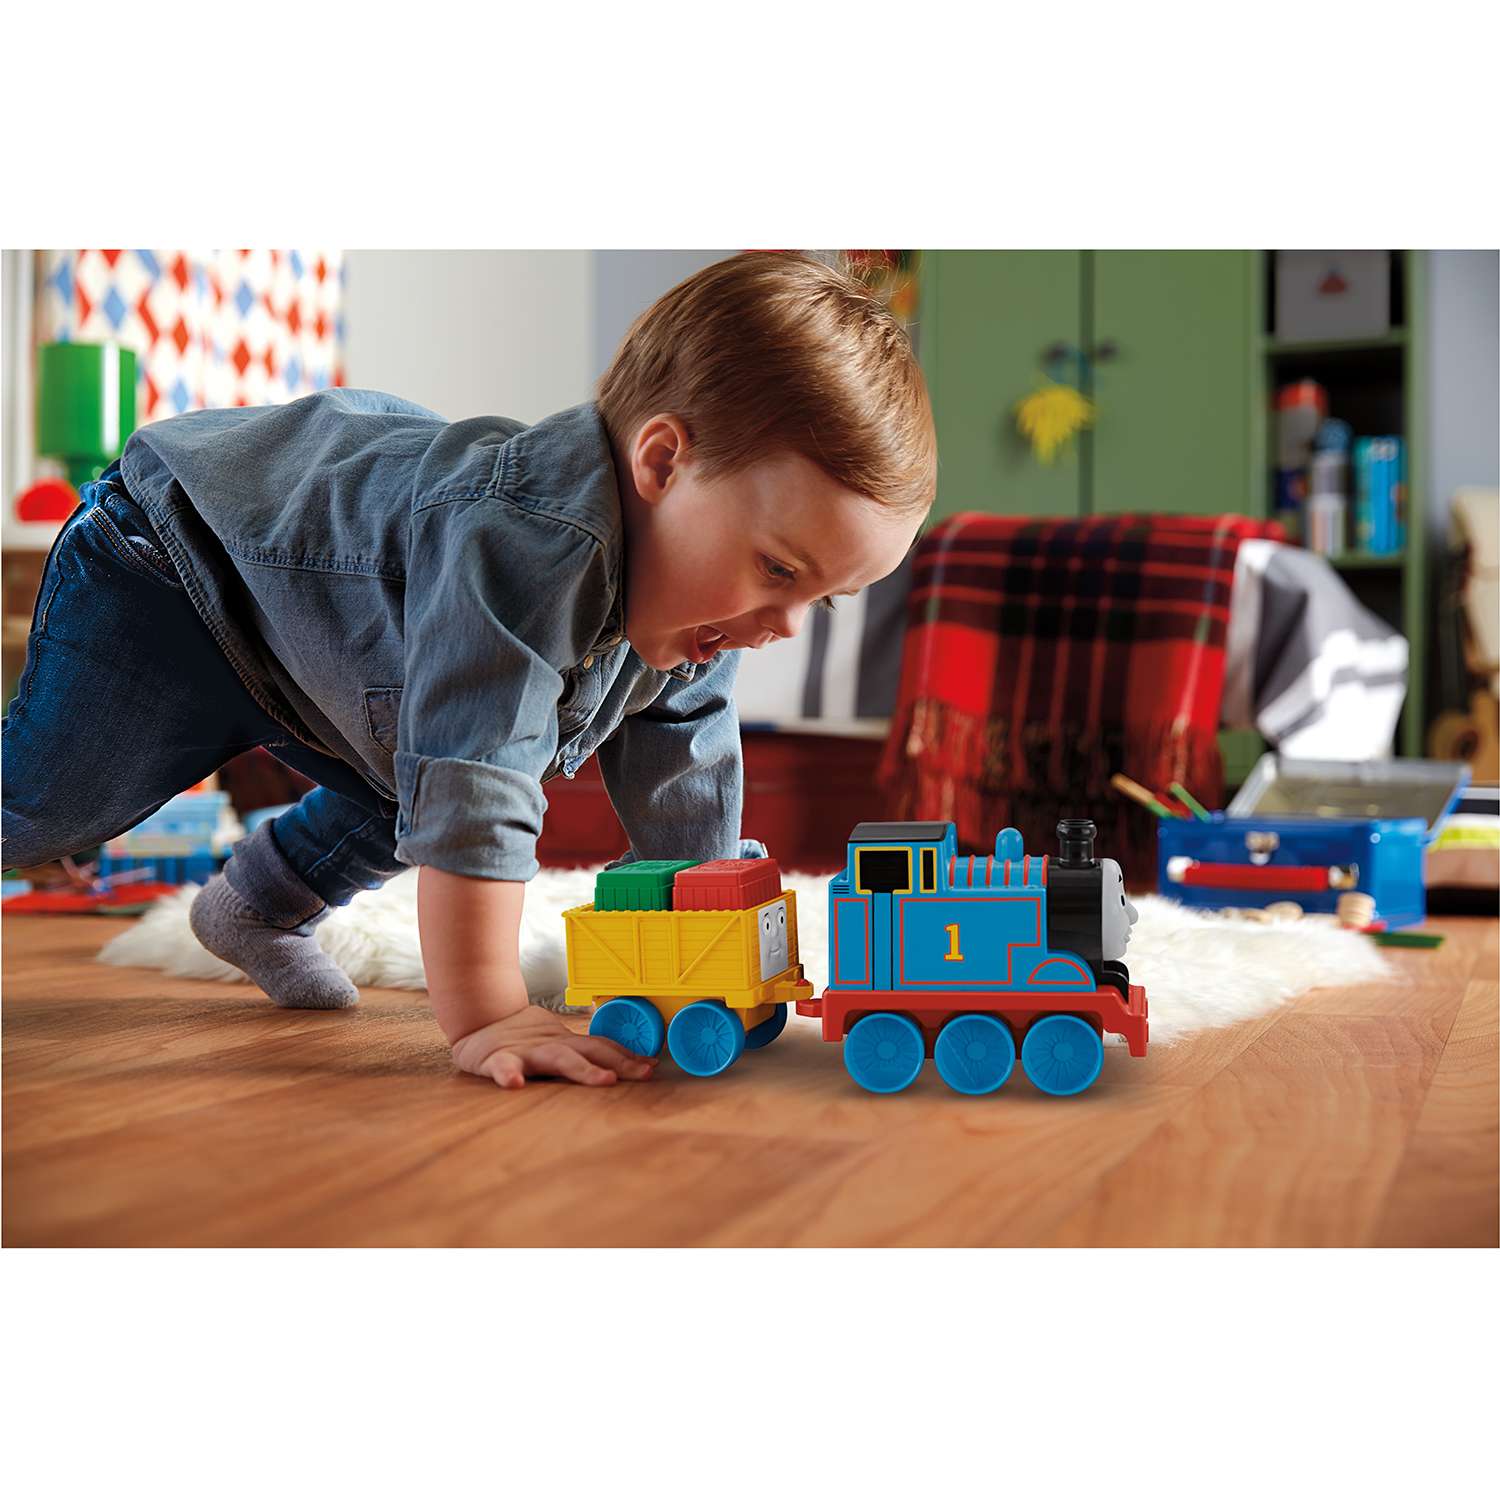 Игровой набор Thomas & Friends Первый паровозик малыша в ассортименте - фото 9